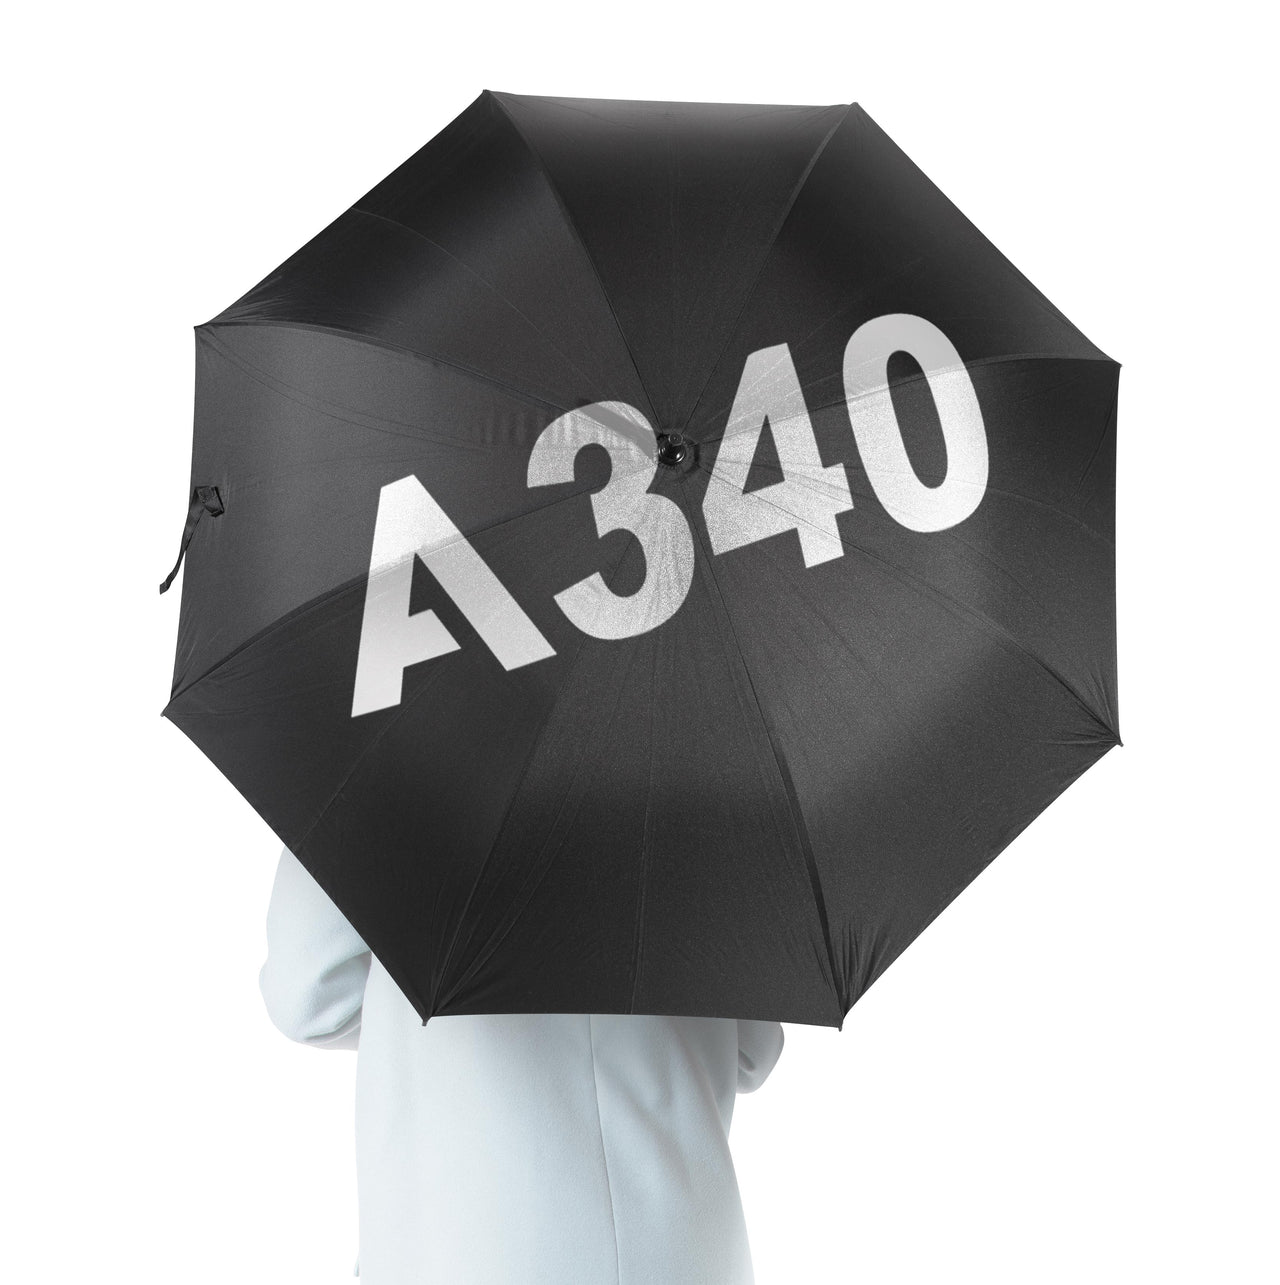 A340 Flat Text Designed Umbrella